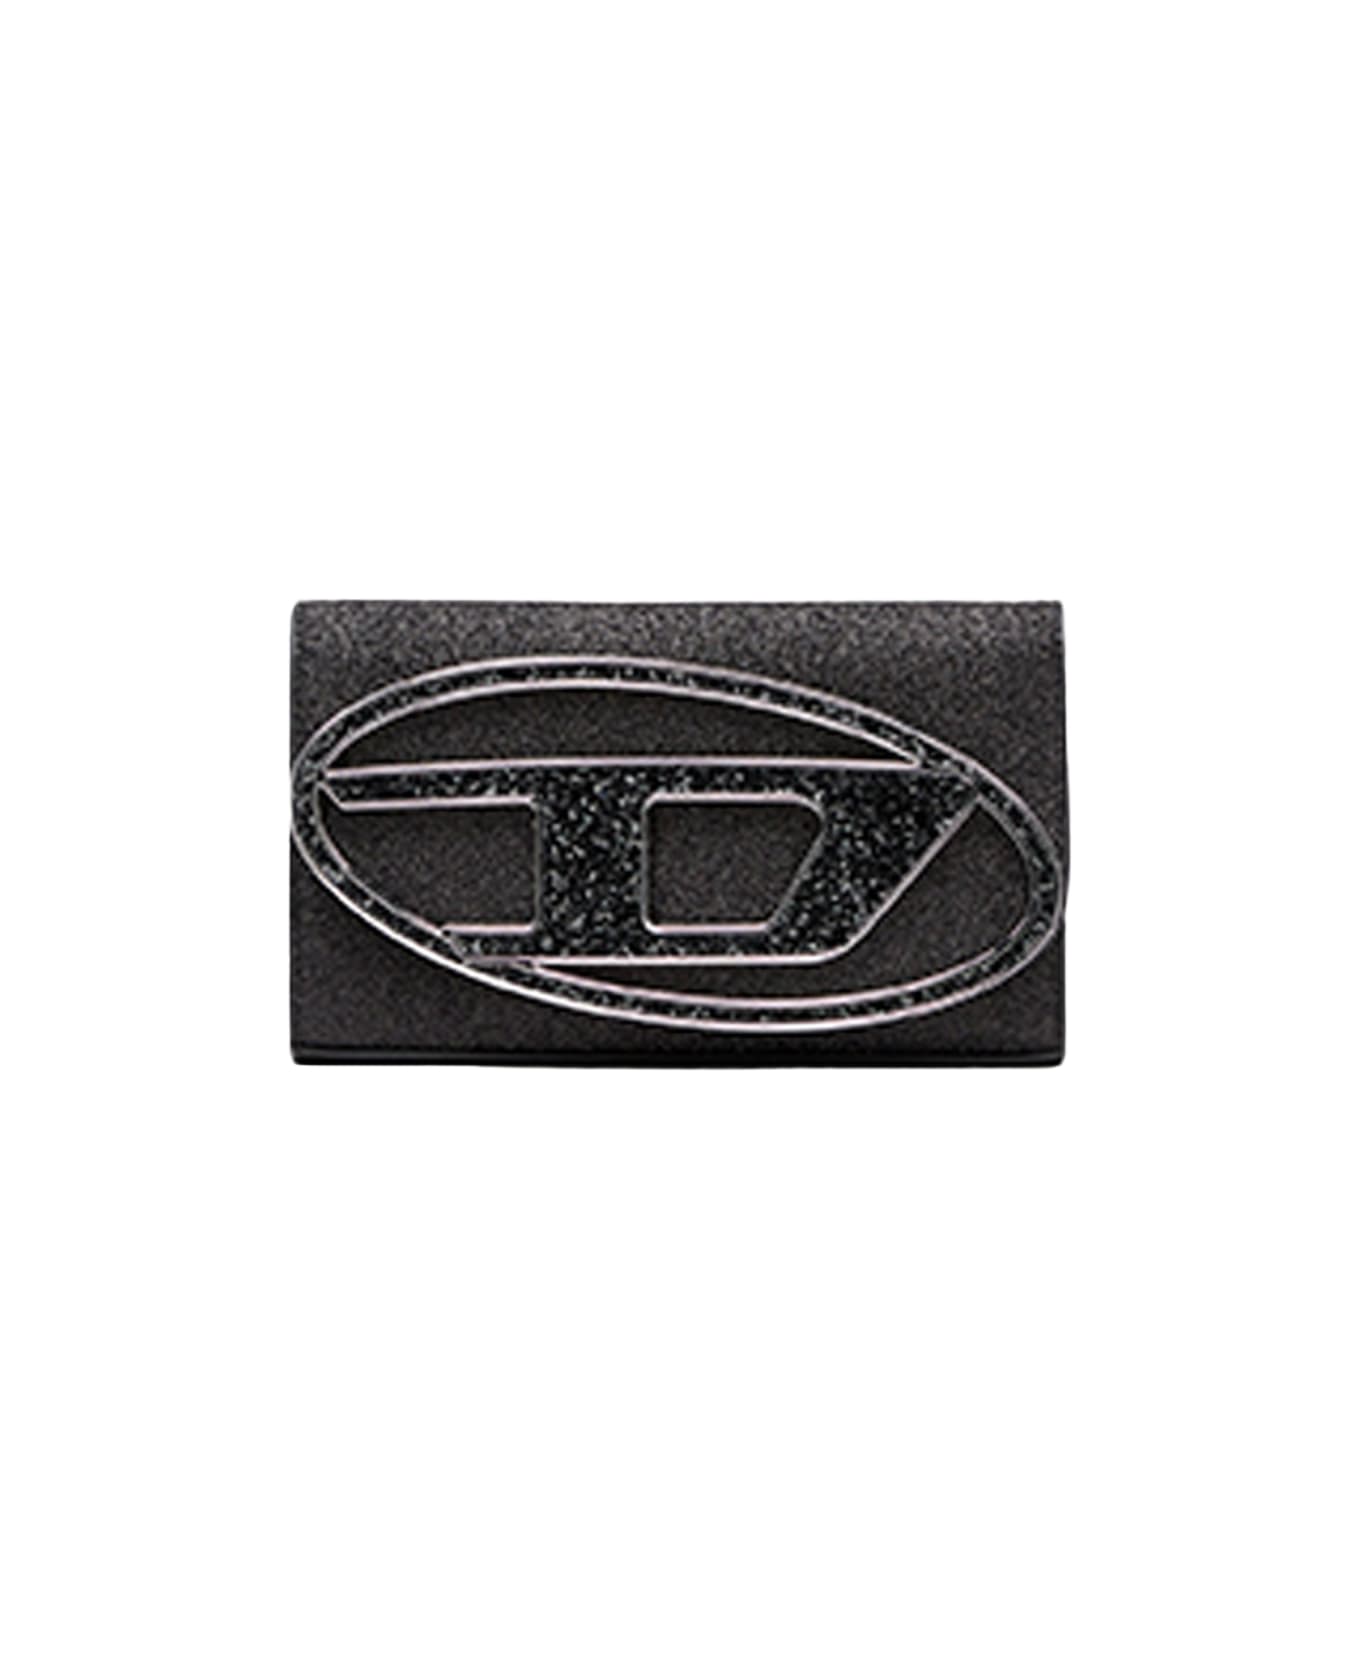 Diesel 1dr 1dr Wallet Strap Sparkly Black Purse With Shoulder Strap - 1dr Wallet Strap - black